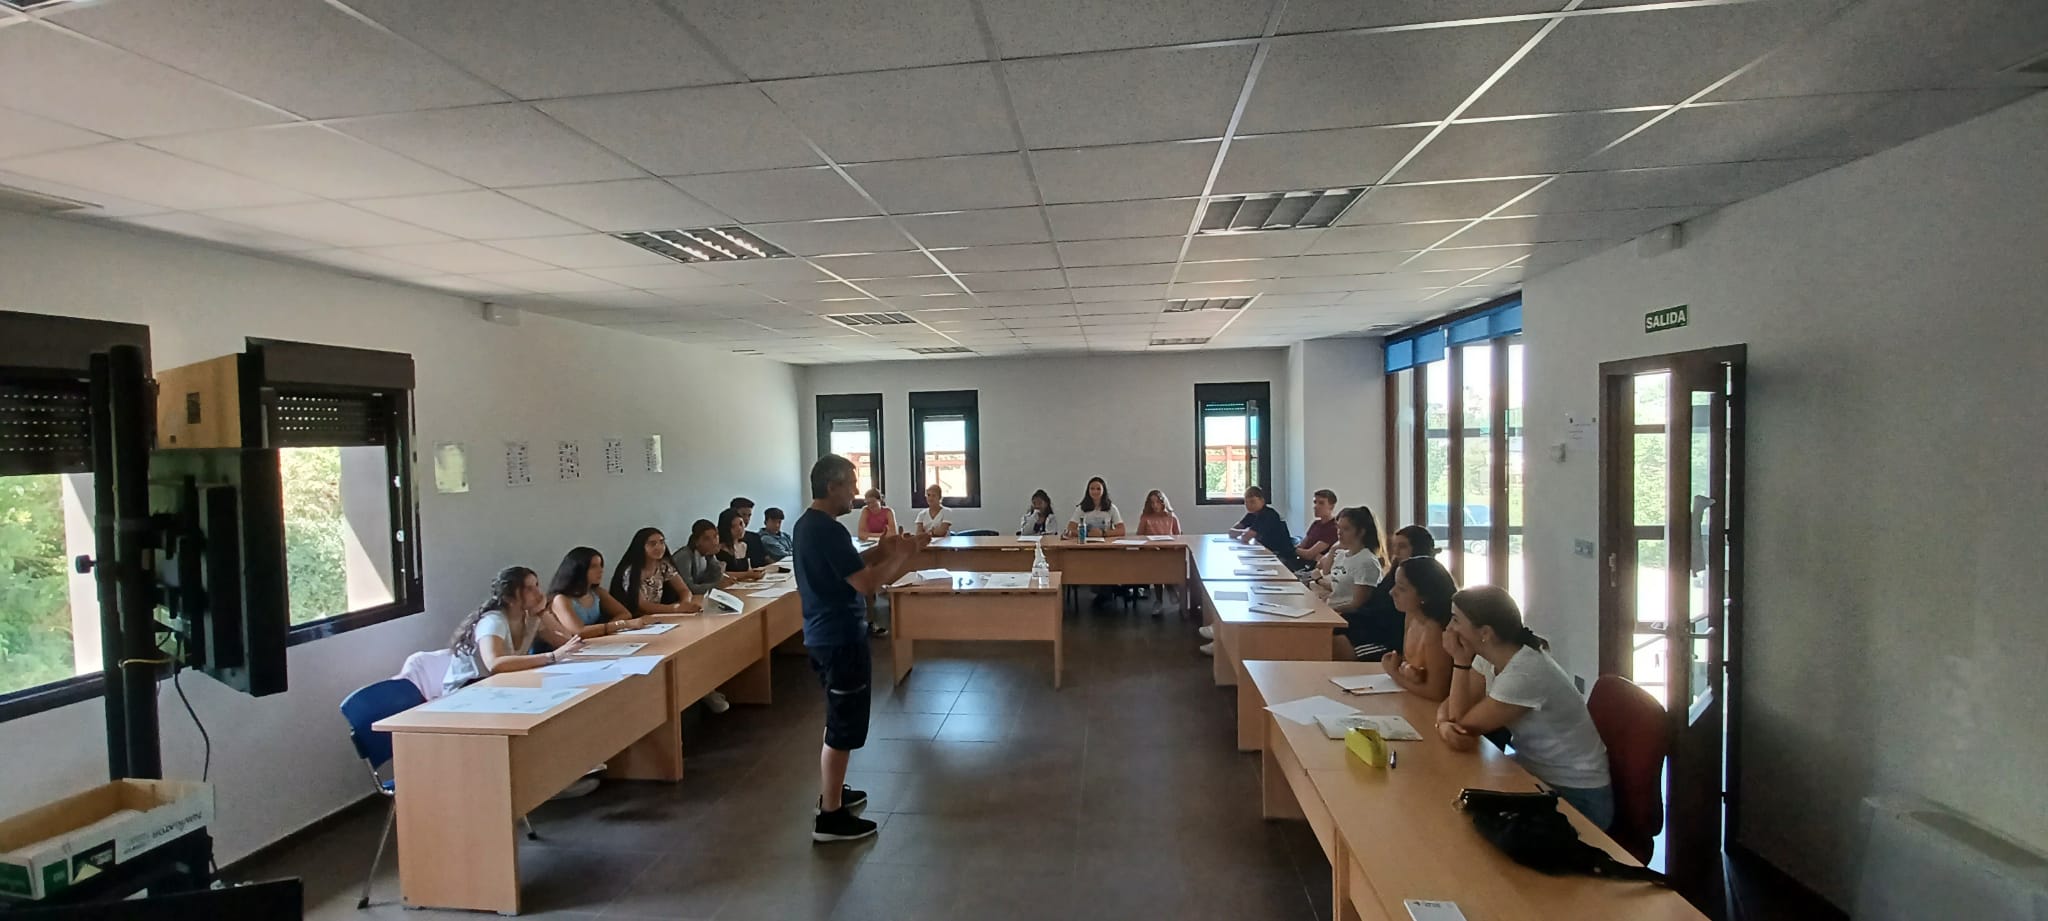 40 jóvenes se forman como monitores y premonitores de tiempo libre en La Jacetania